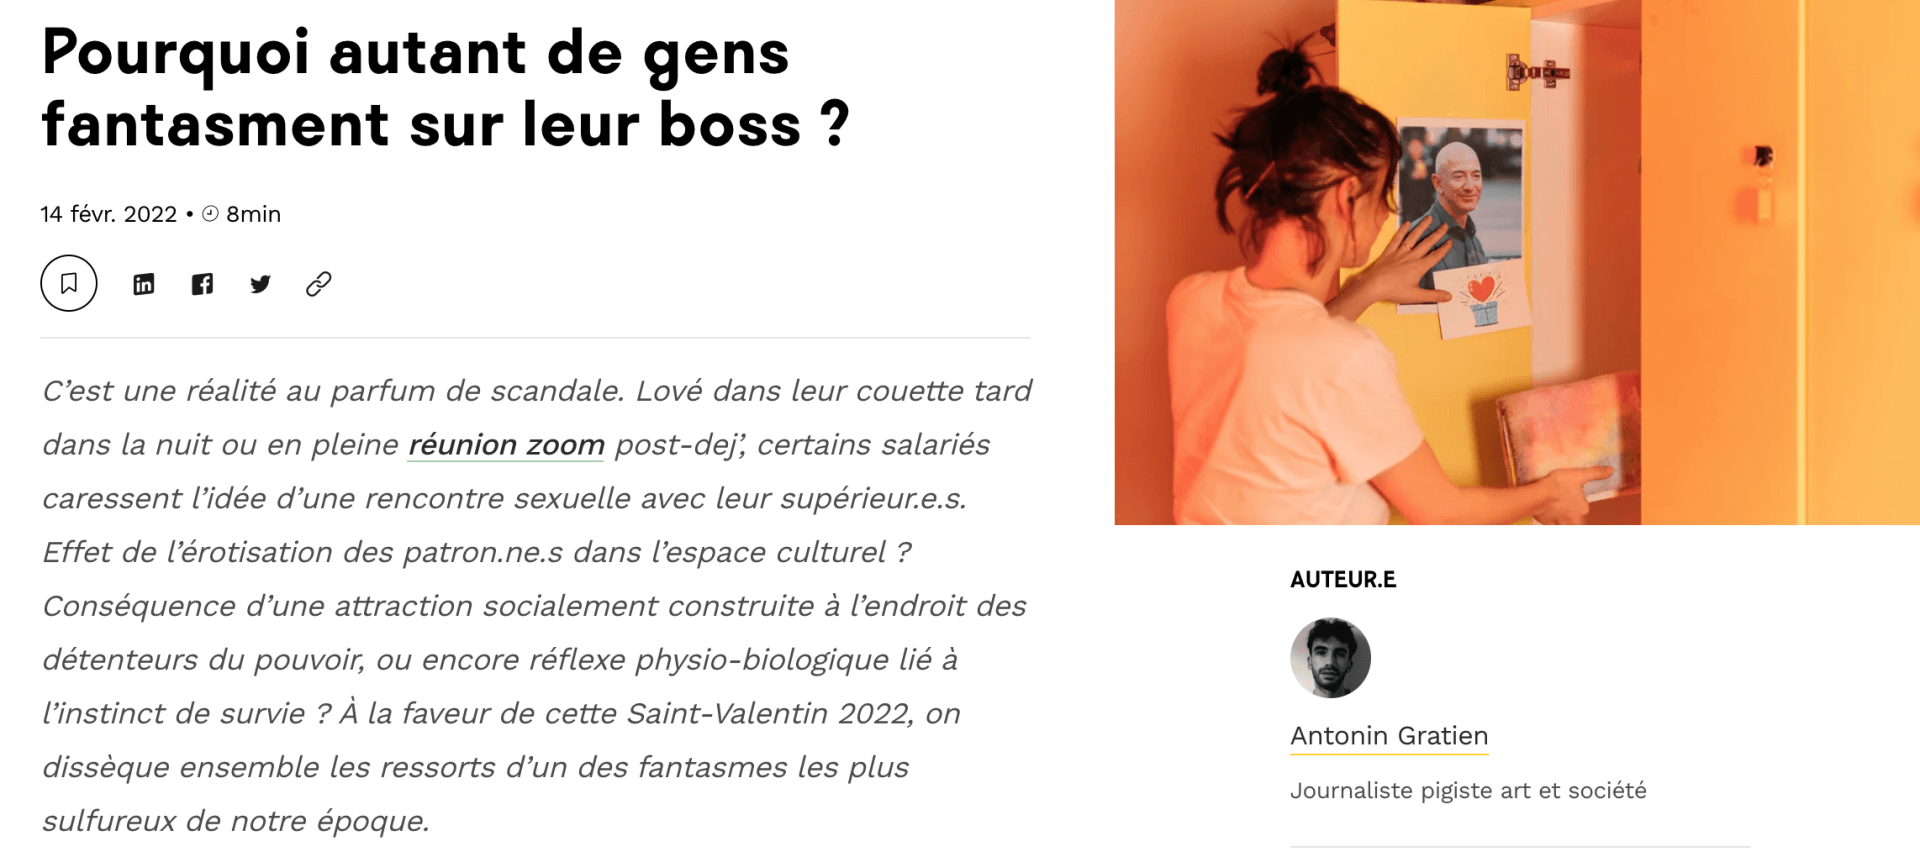 Aperçu article Welcome to the jungle sur le fantasme des boss